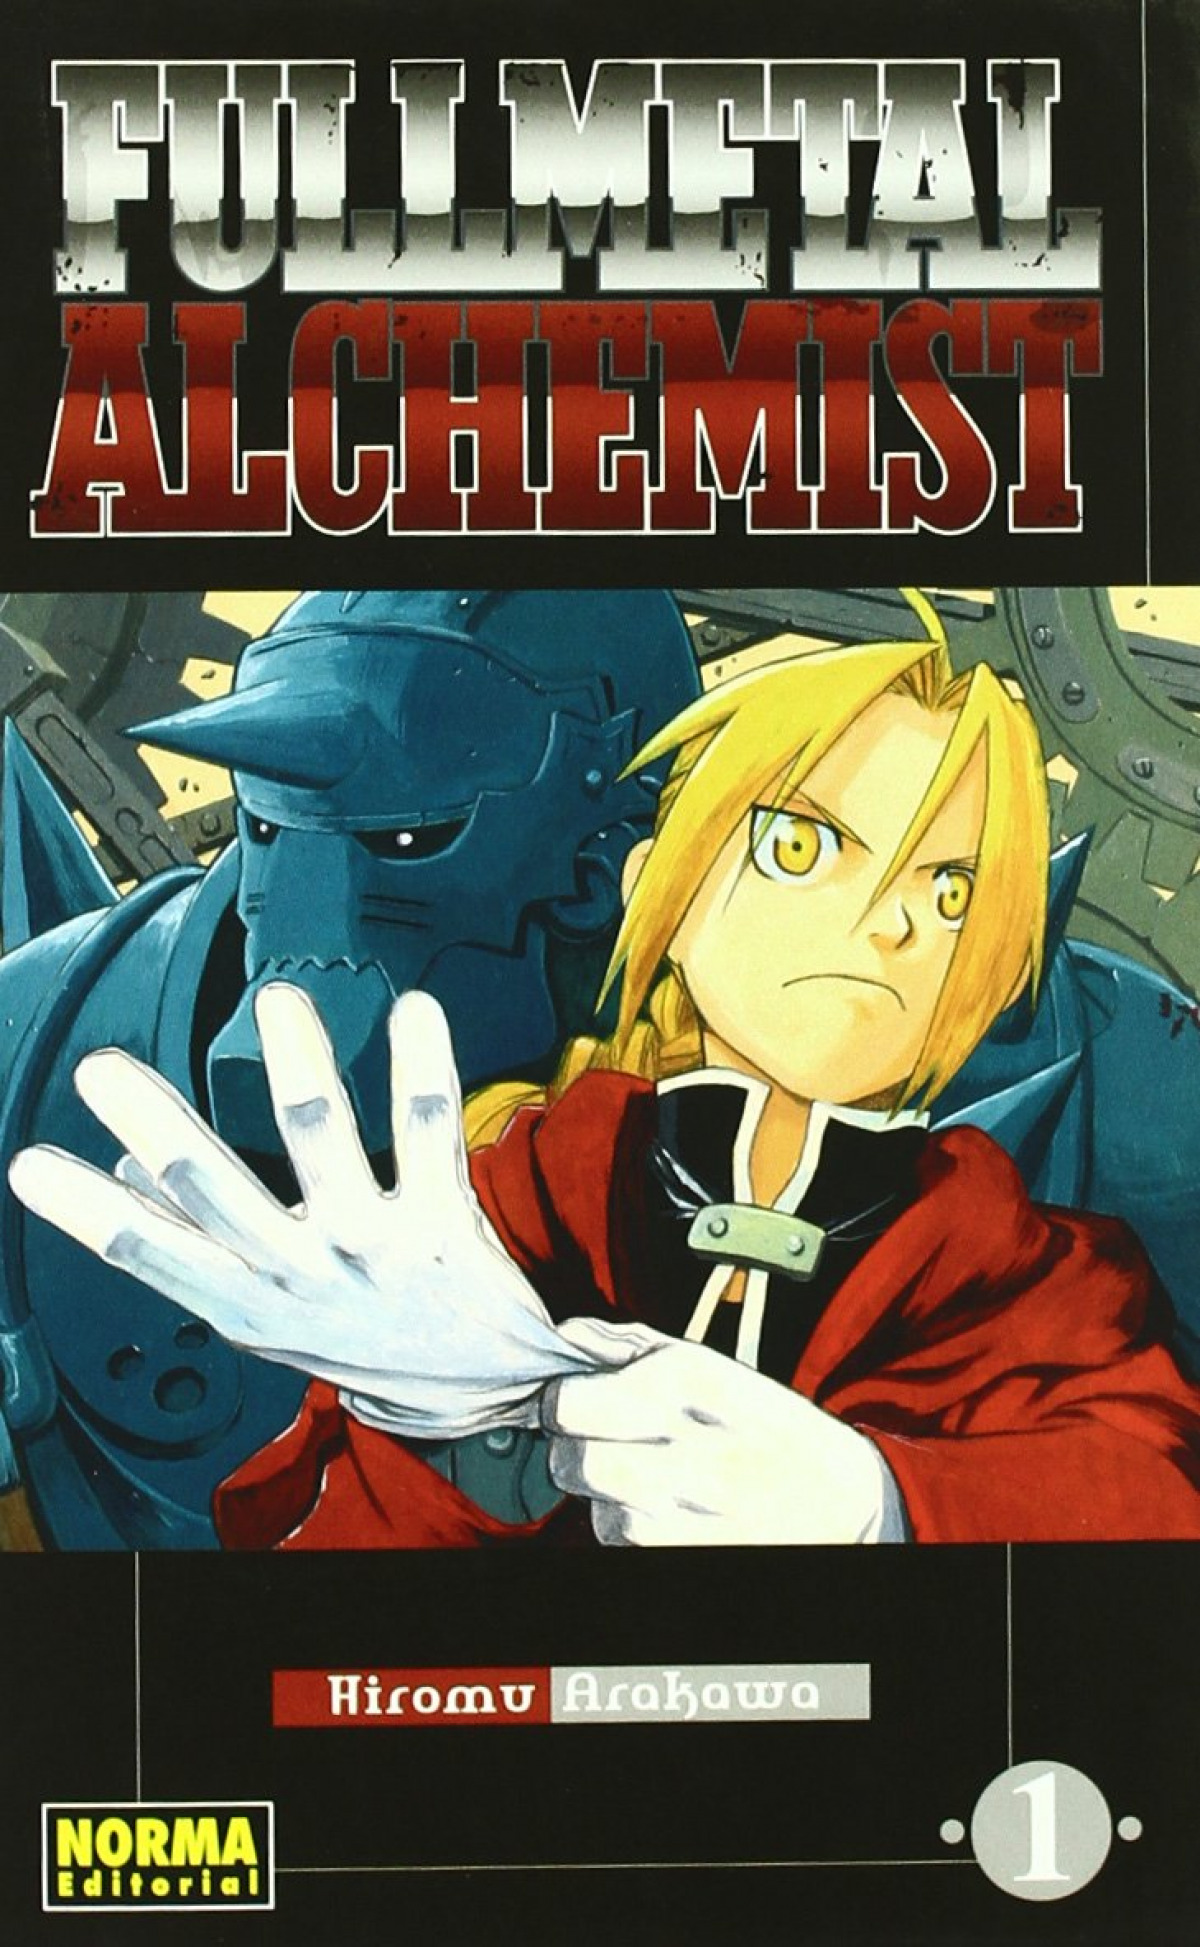 Fullmetal alchemist 1 - Arakawa, Hiromu